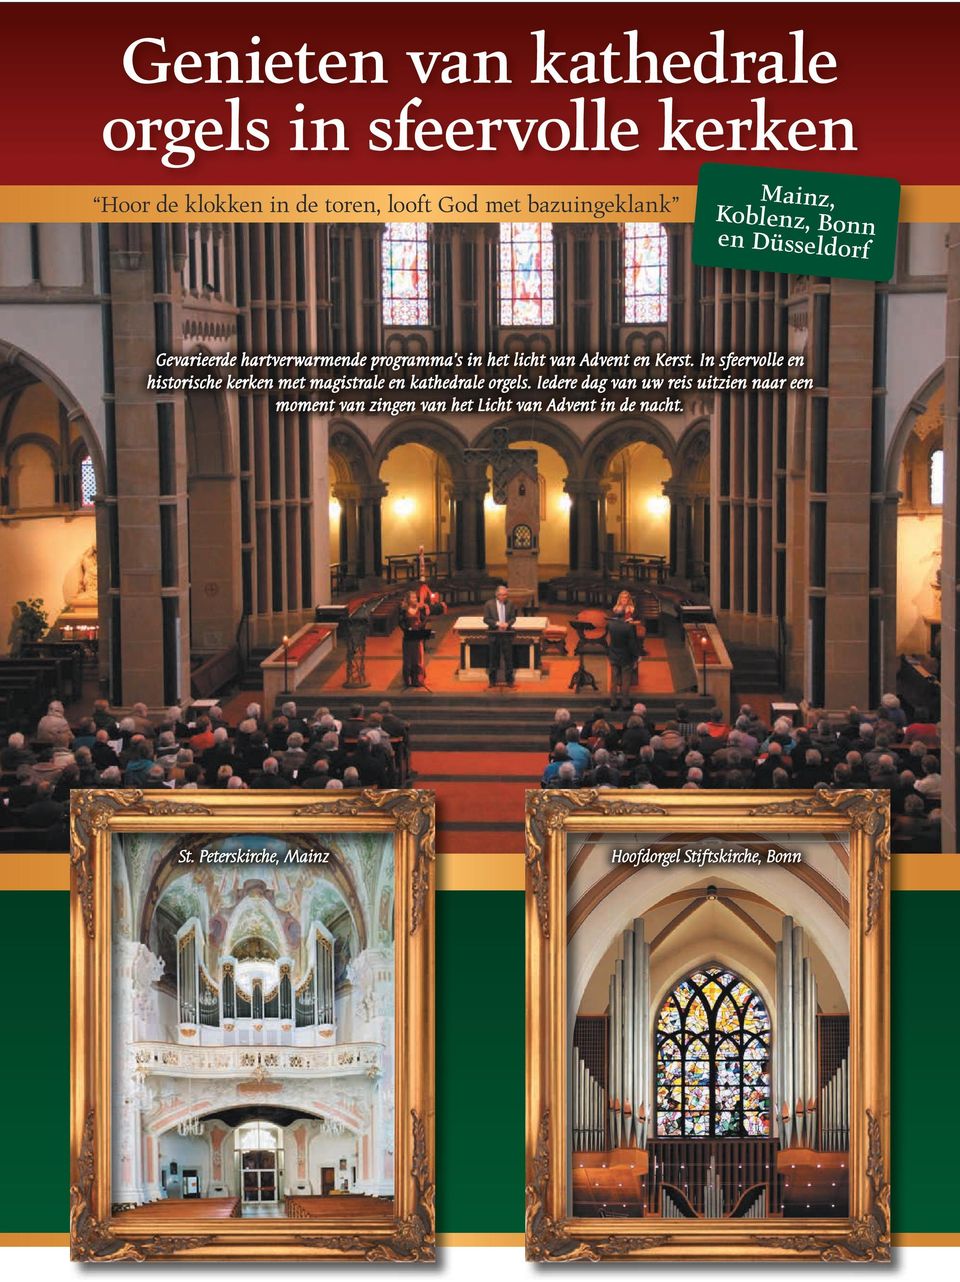 In sfeervolle en historische kerken met magistrale en kathedrale orgels.